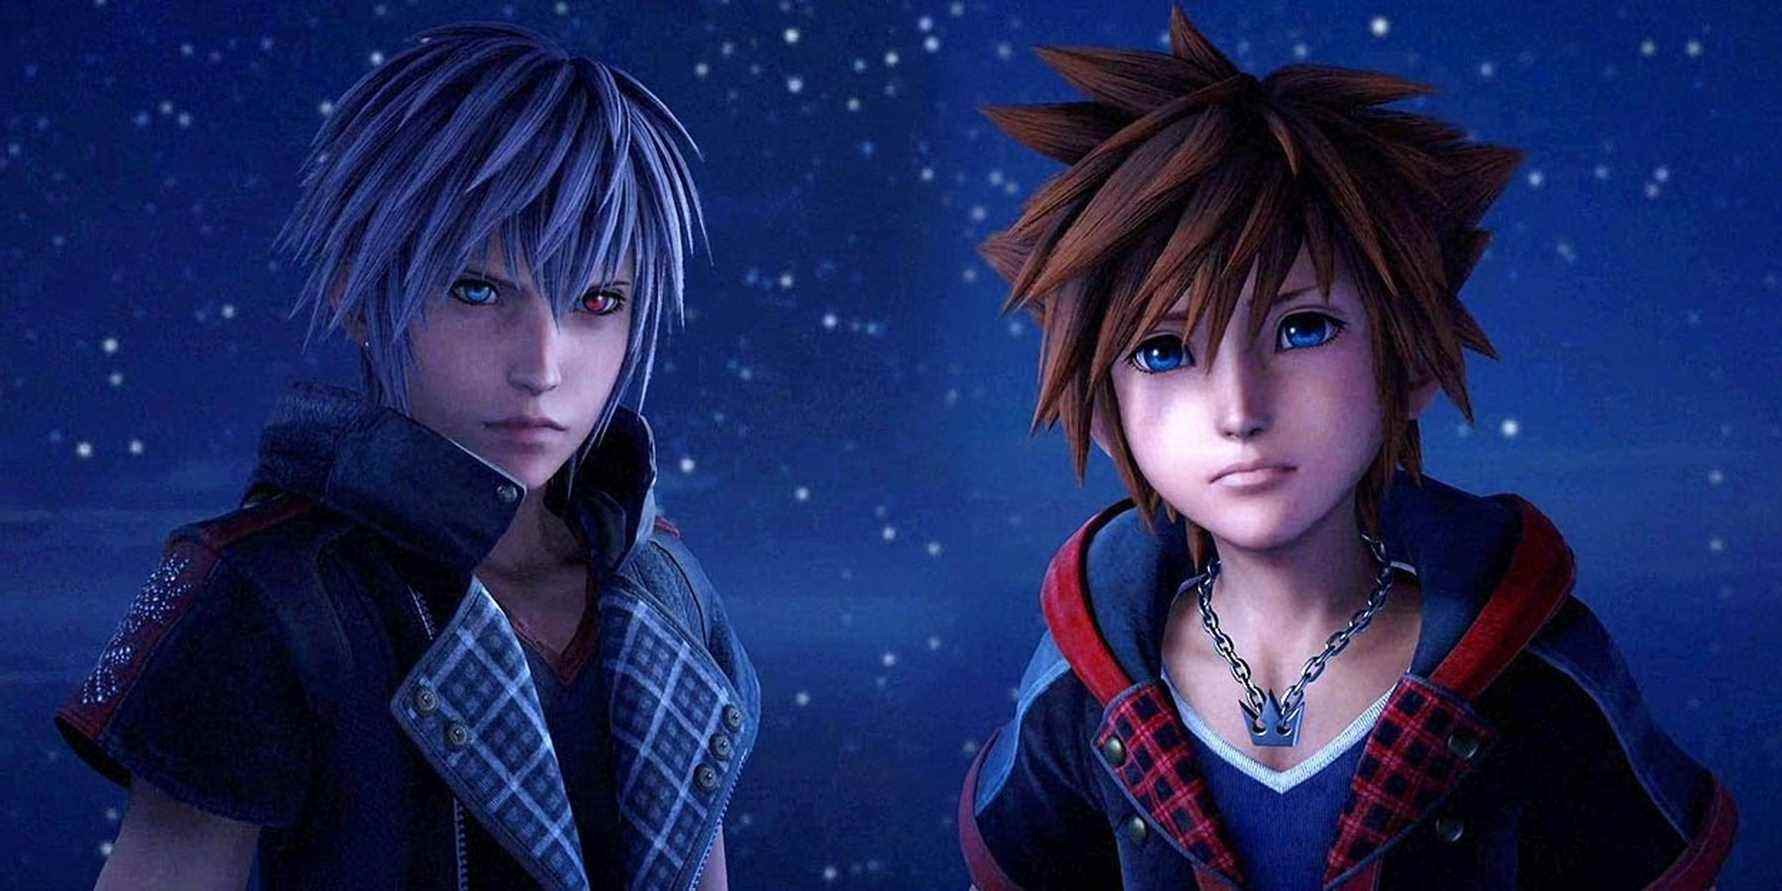 Sora et Yozora de Kingdom Hearts 3 se tiennent devant un ciel étoilé.